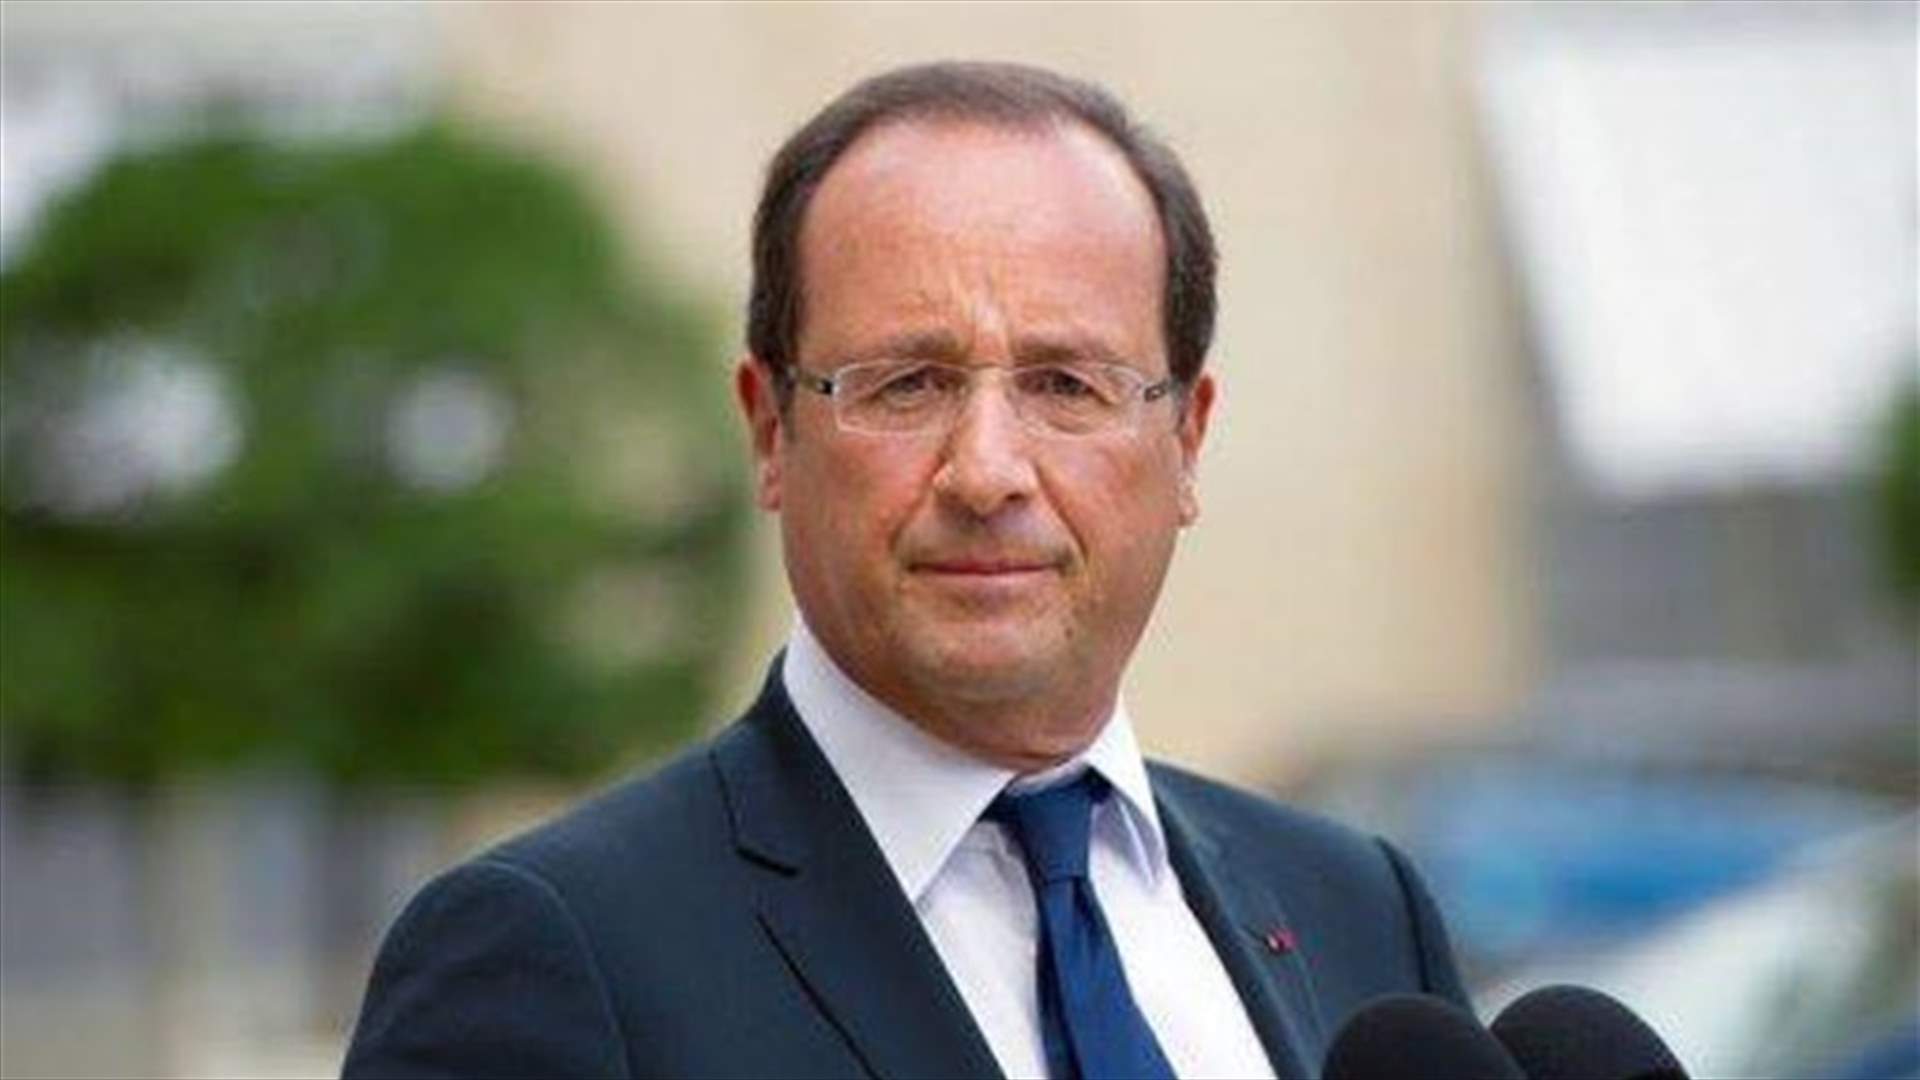 الادعاء الفرنسي يحقق في انتهاك أمني مزعوم على صلة بالرئيس